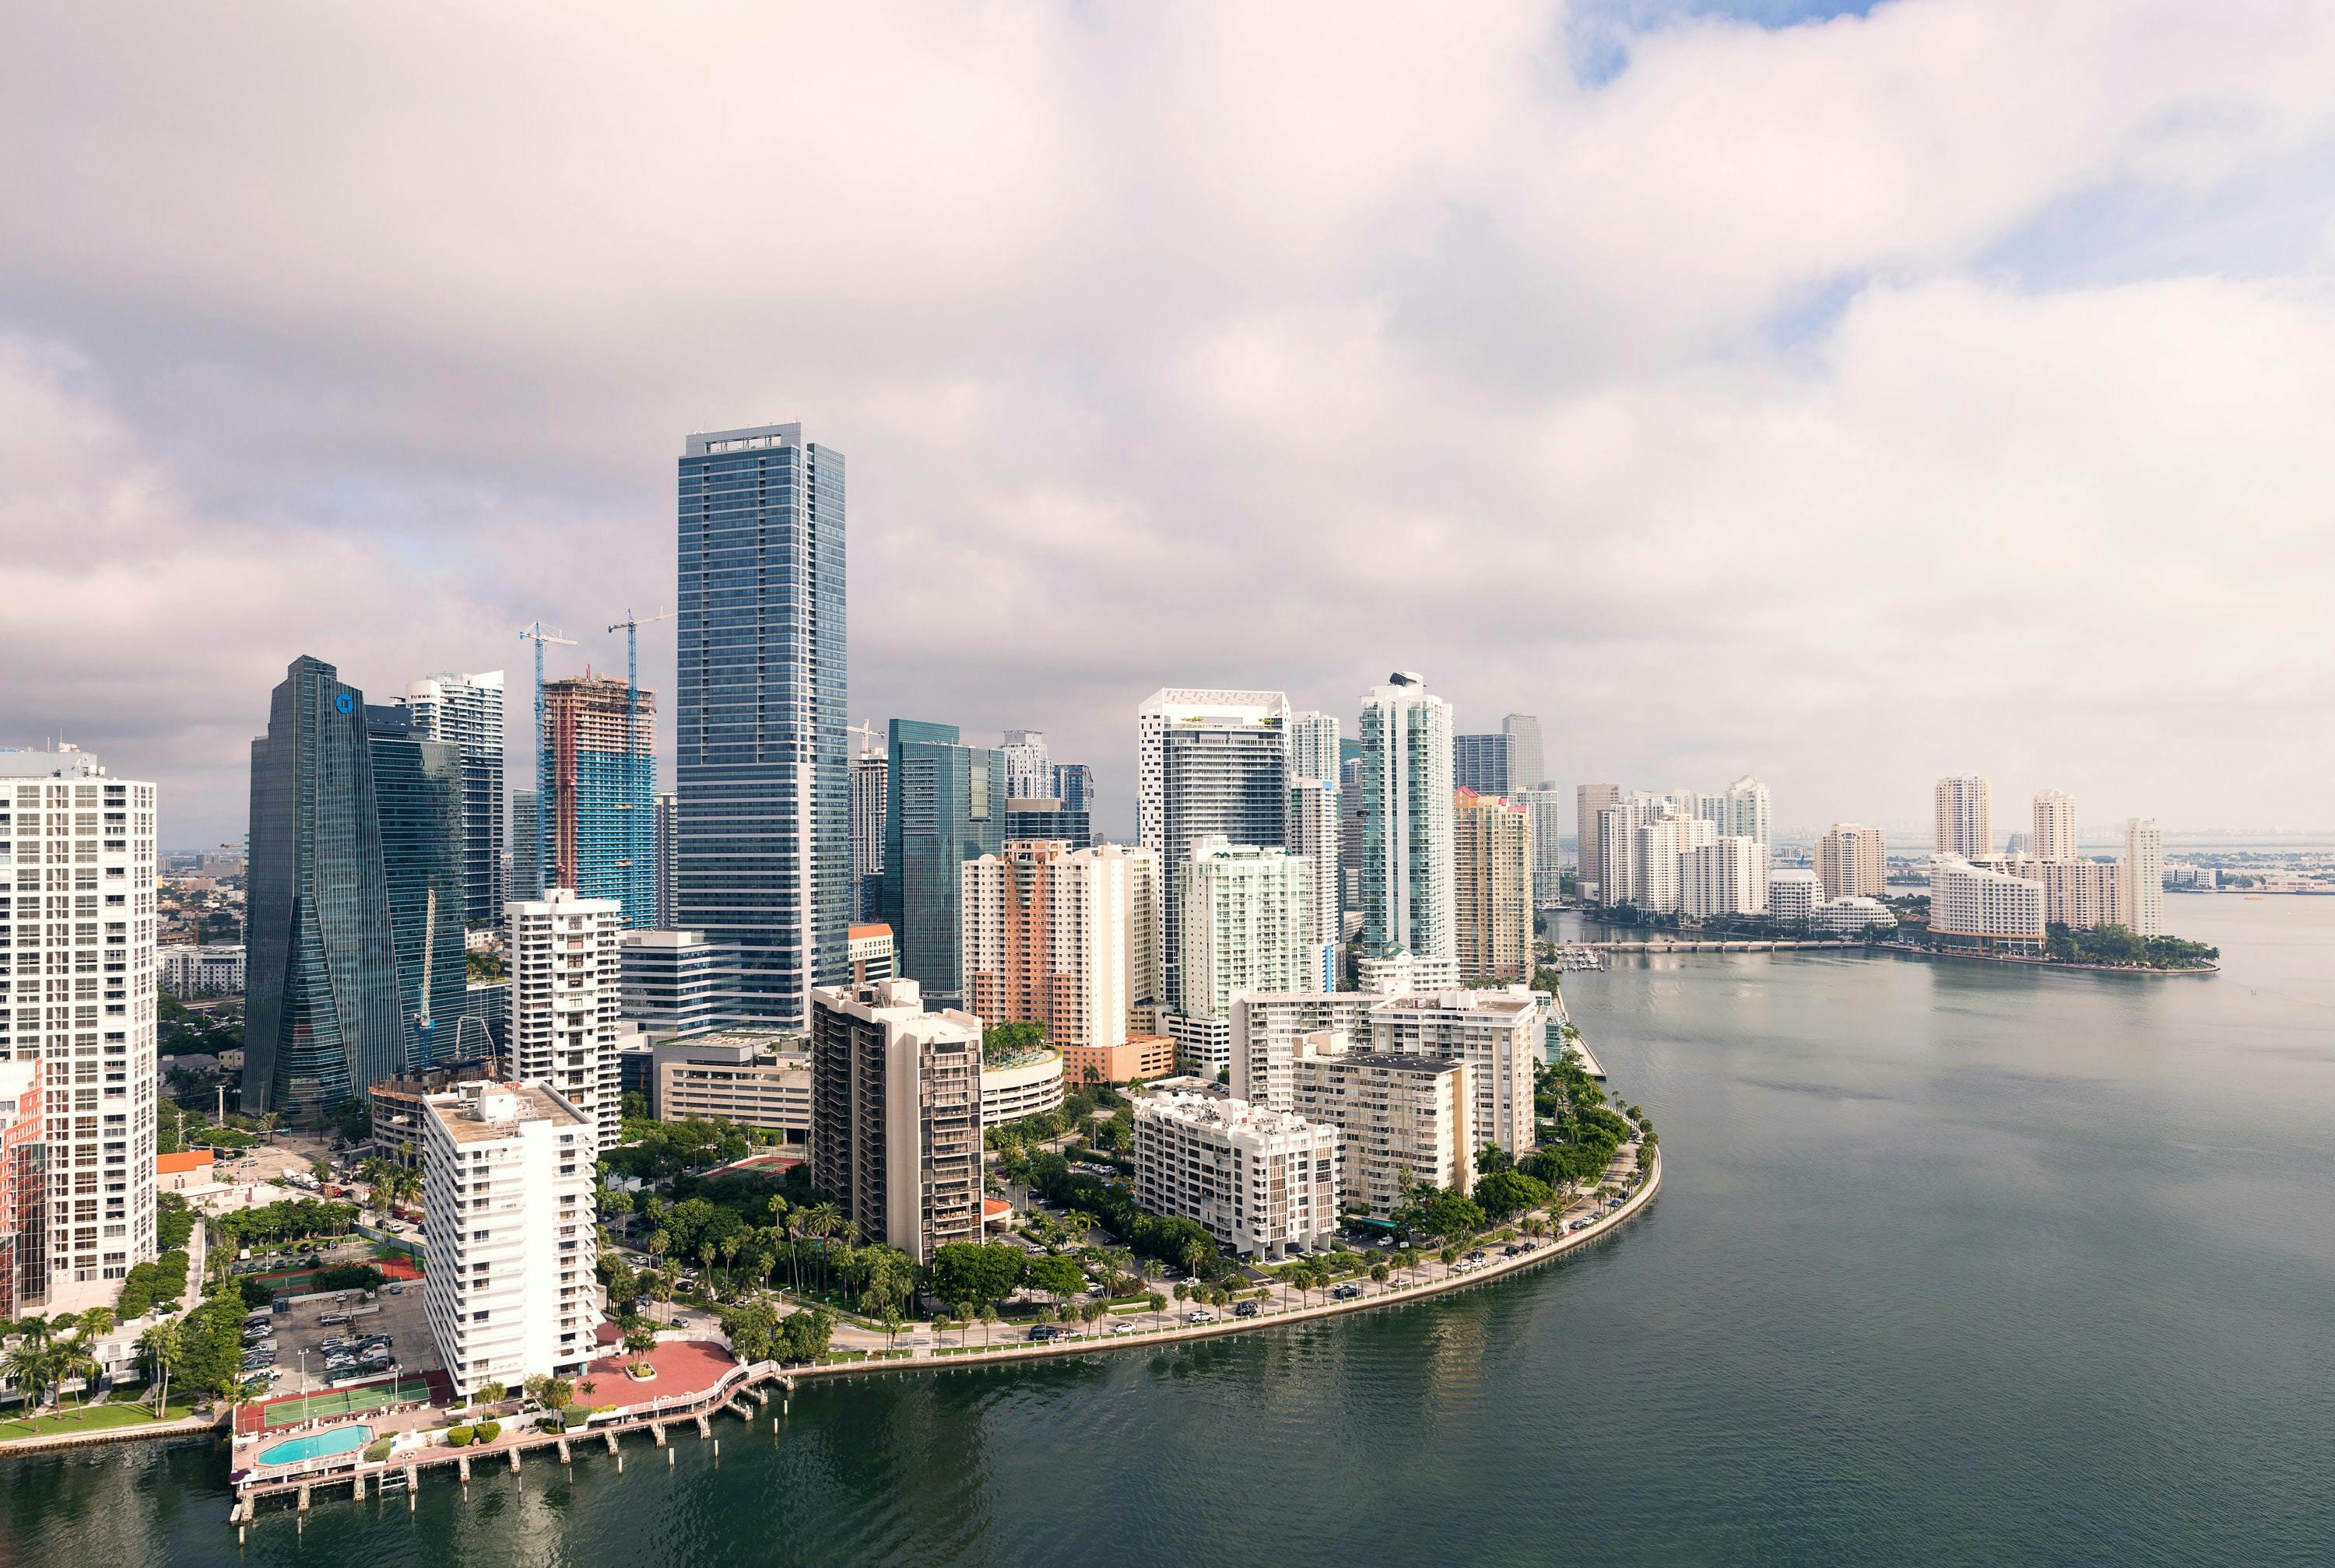 Skyscrapers in Miami, Florida